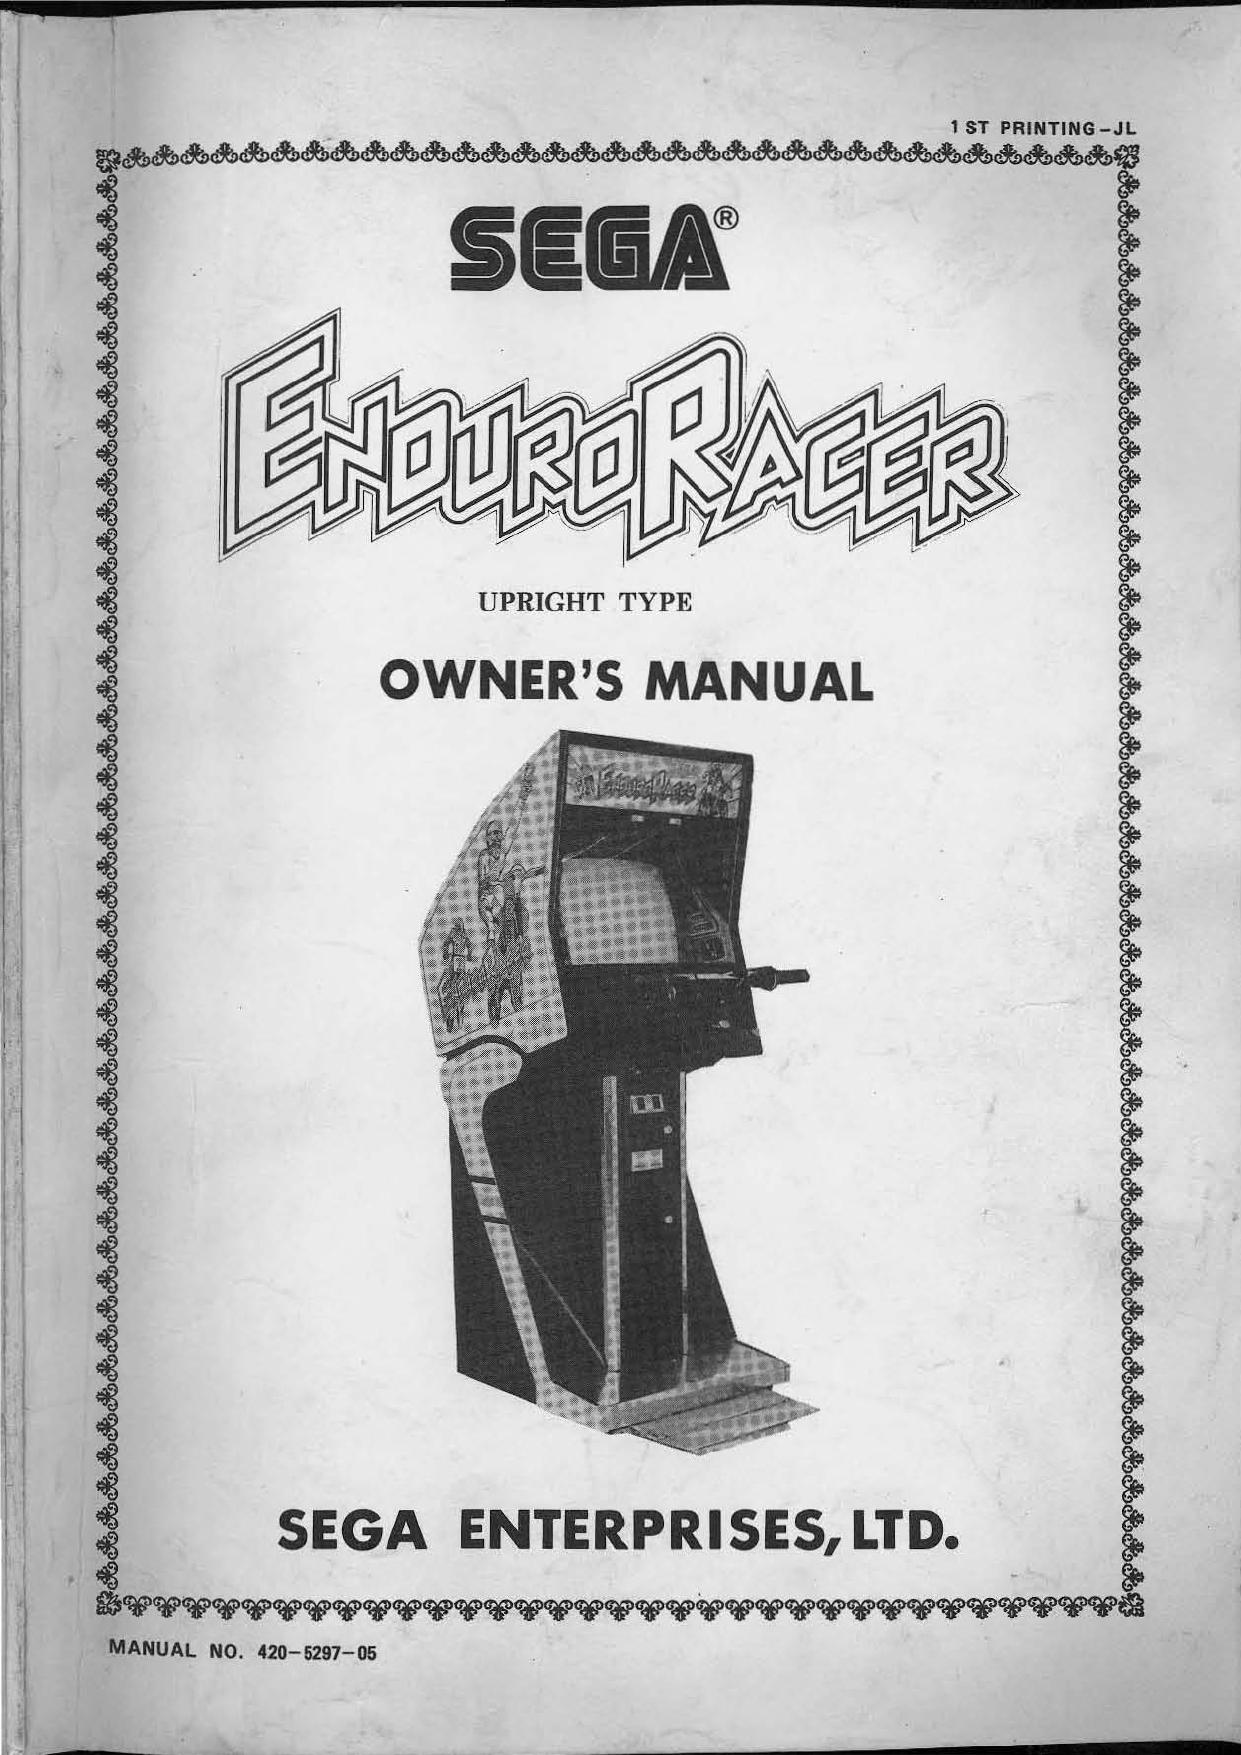 Enduro Racer Upright